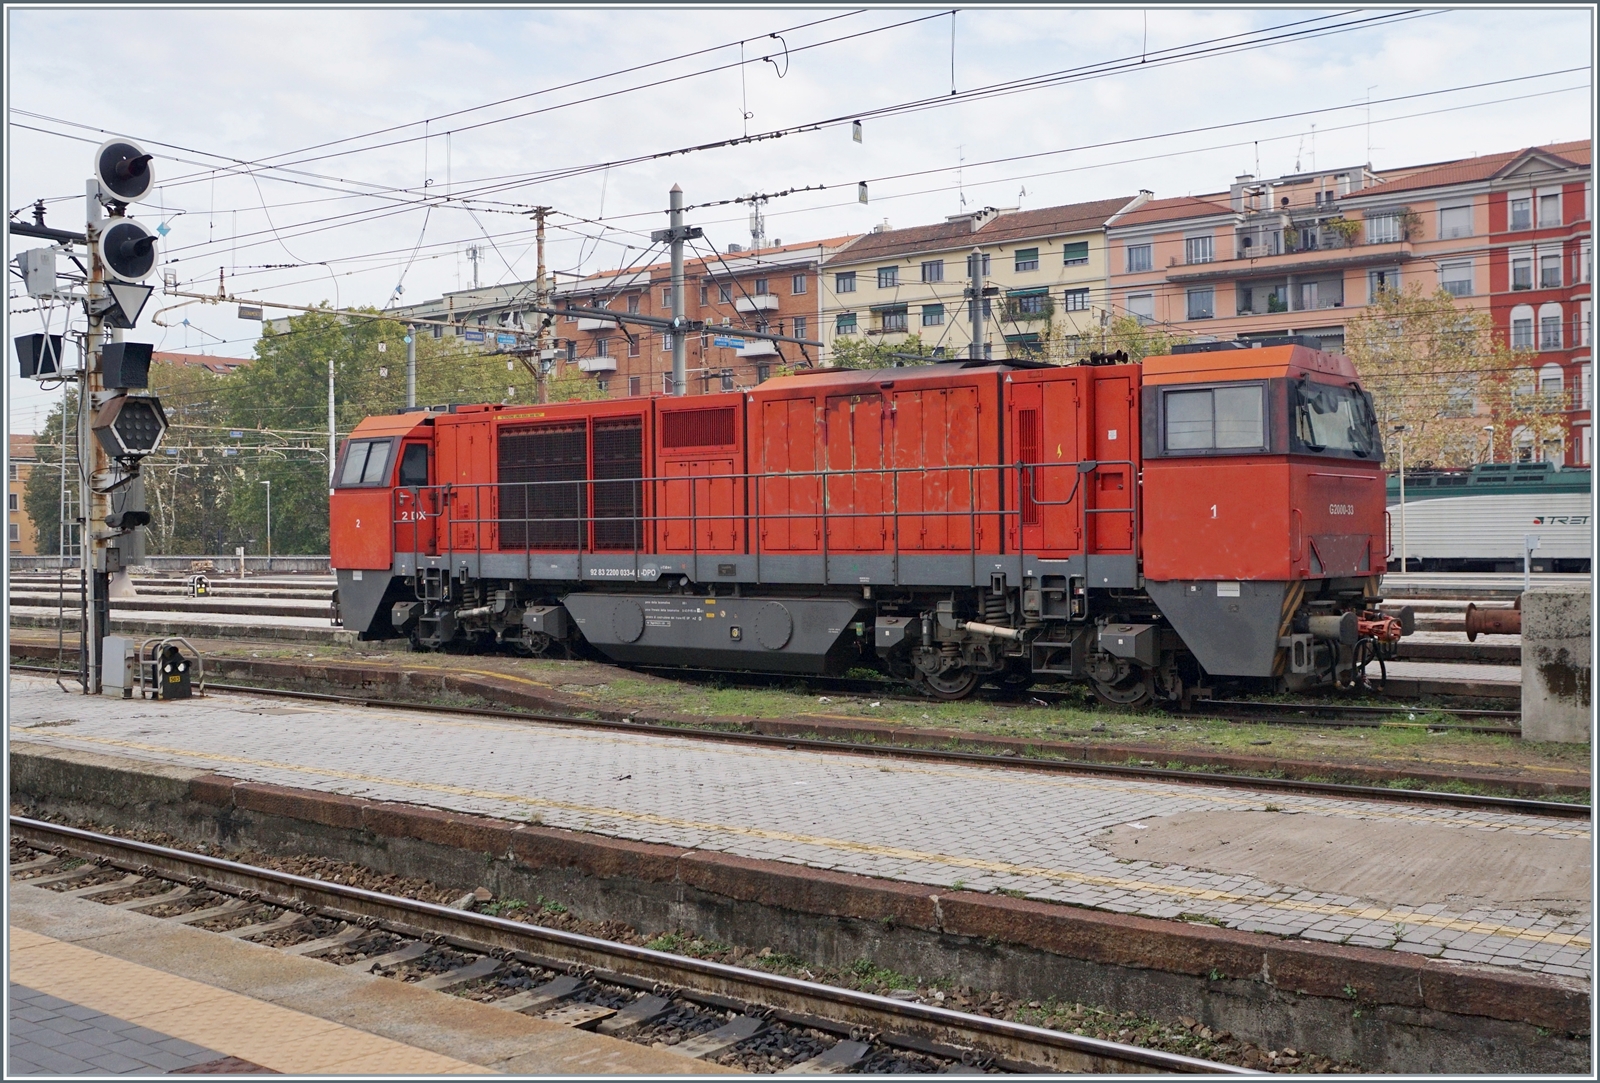 Ein der wenigen zu sehenden Loks war die interessante Dinazzano Pò Diesellok G 2200-33 (92 83 2200 033-4 I-DPO), welche in Milano Centrale stand.
Die  Sonderbemalung  der Lok habe ich etwas entfernt.

8. November 2022